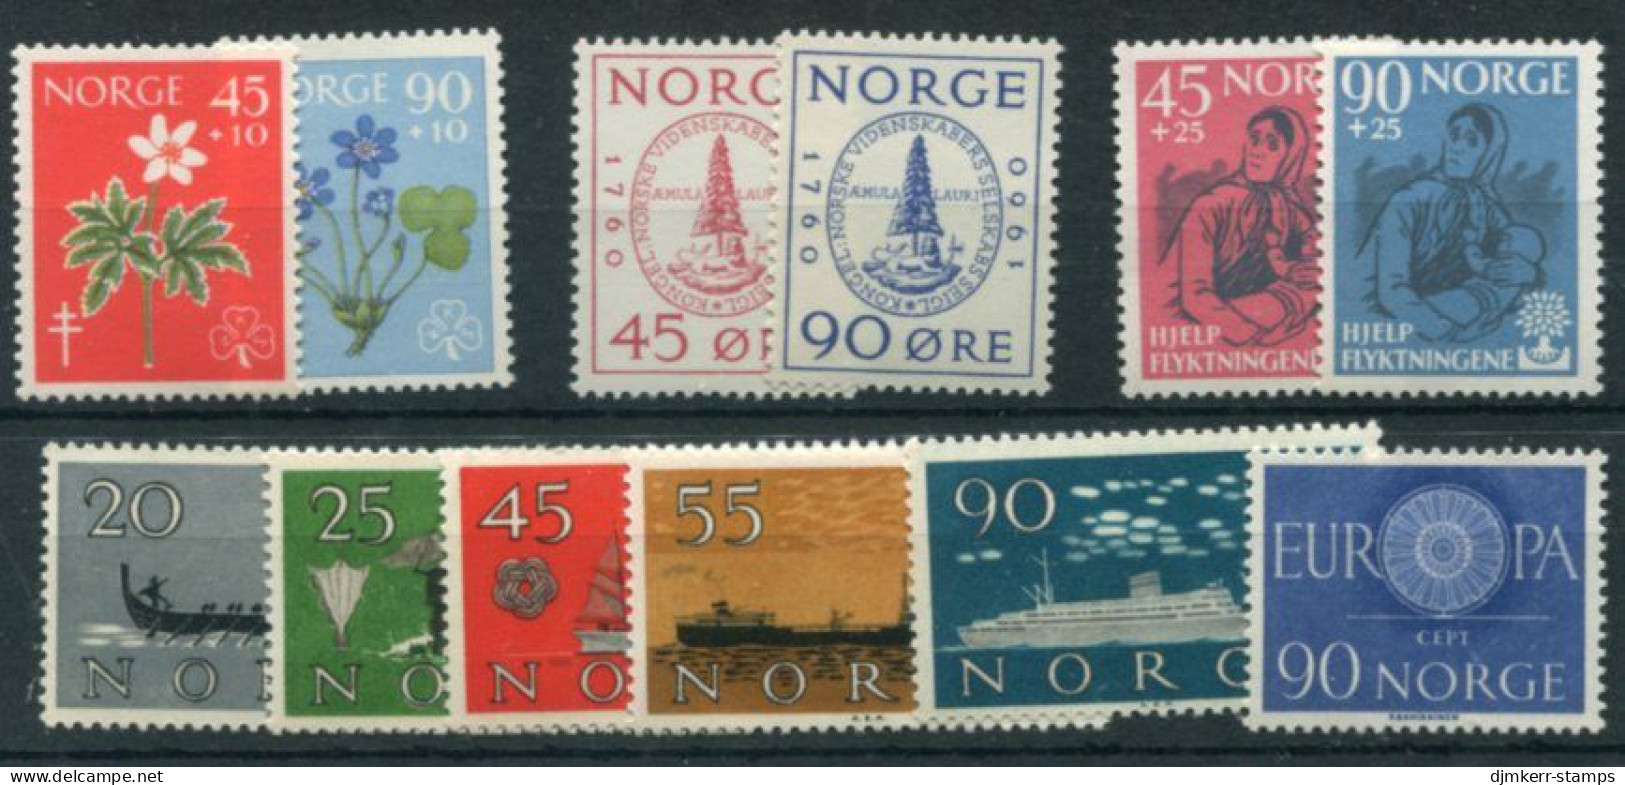 NORWAY 1960 Complete Commemorative Issues MNH / **.  Michel 438-49 - Volledig Jaar